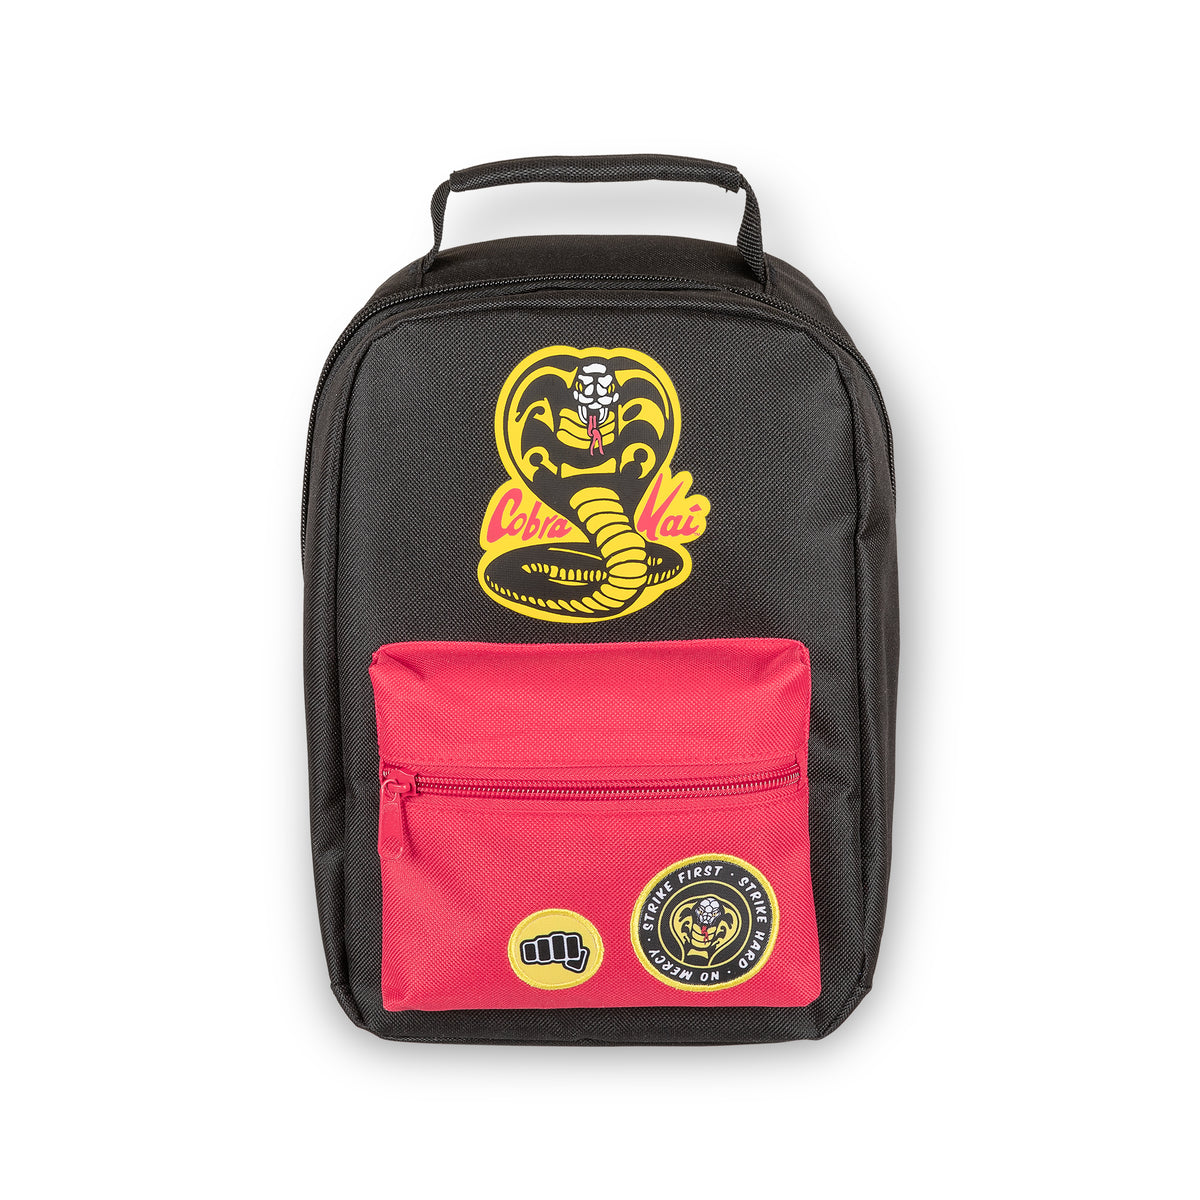 Cobra Kai Insulated Lunch Bag